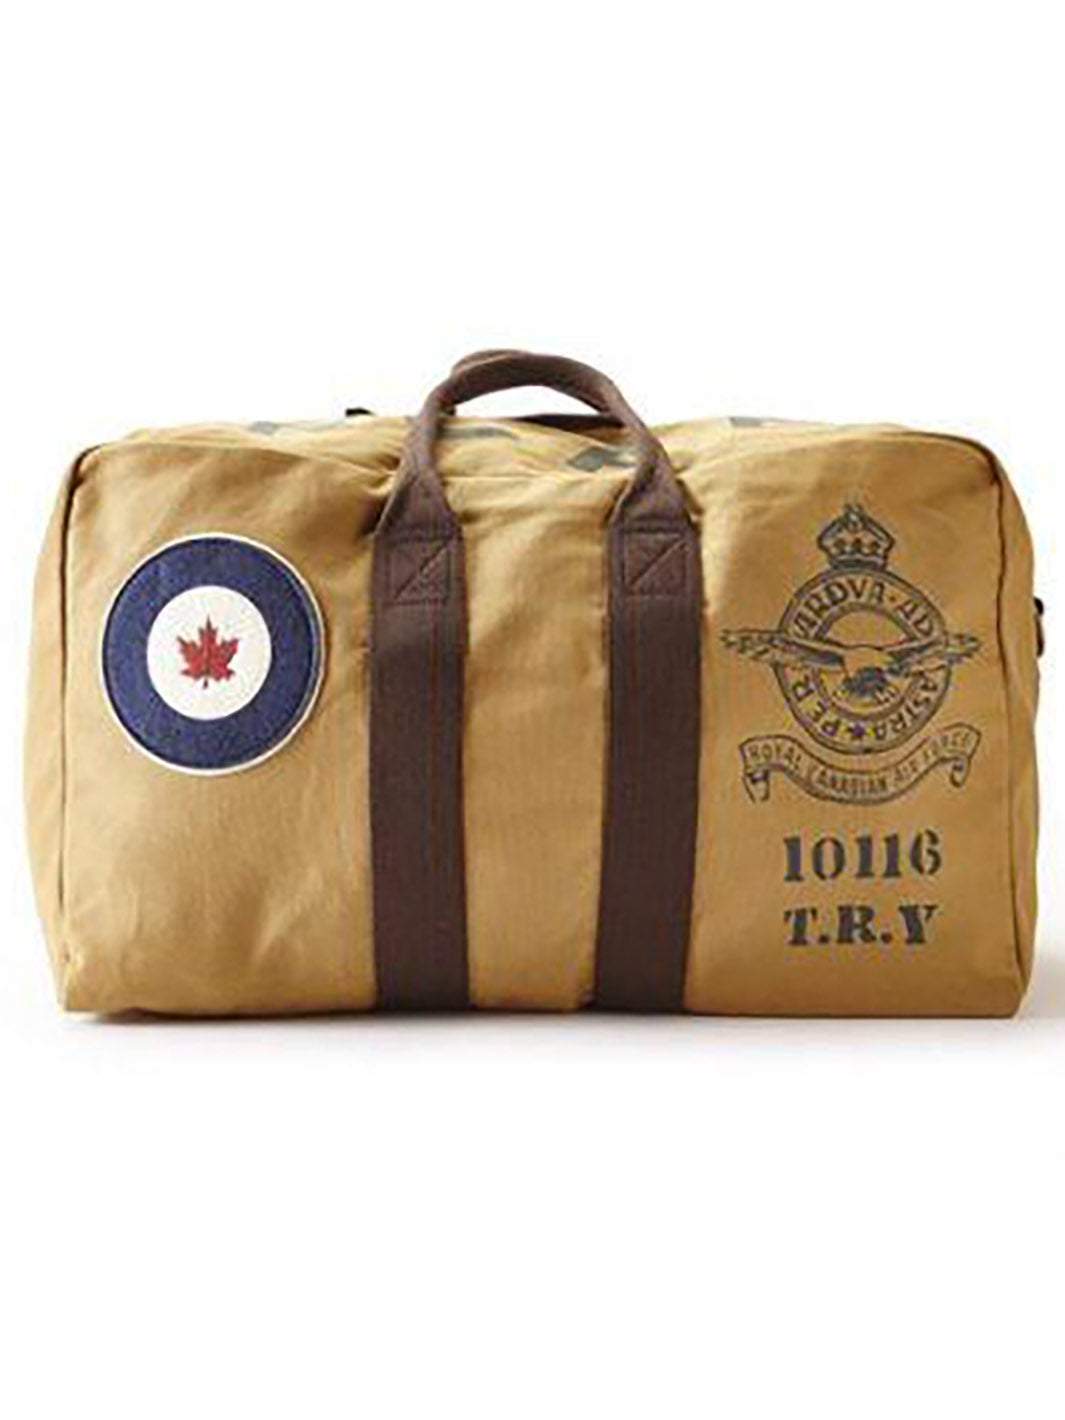 Grand sac RCAF tan avec logos